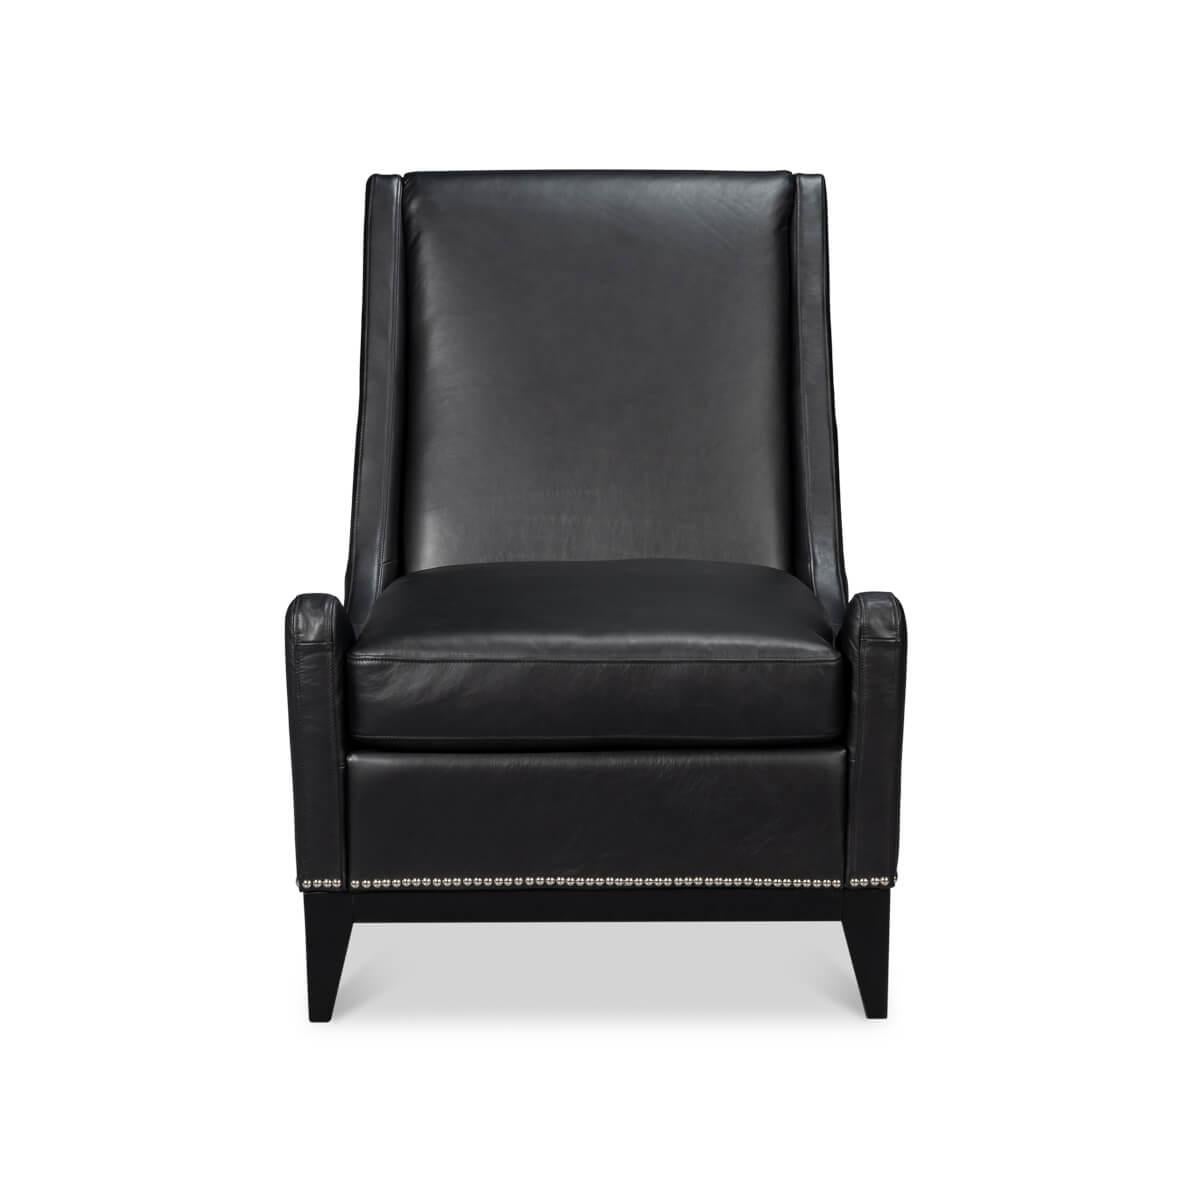 Fabriqué avec une attention méticuleuse aux détails, ce fauteuil est doté d'un cuir souple de première qualité qui vous invite à vous asseoir et à vous détendre. Le cuir foncé Onyx Black est magnifiquement complété par la garniture classique en tête